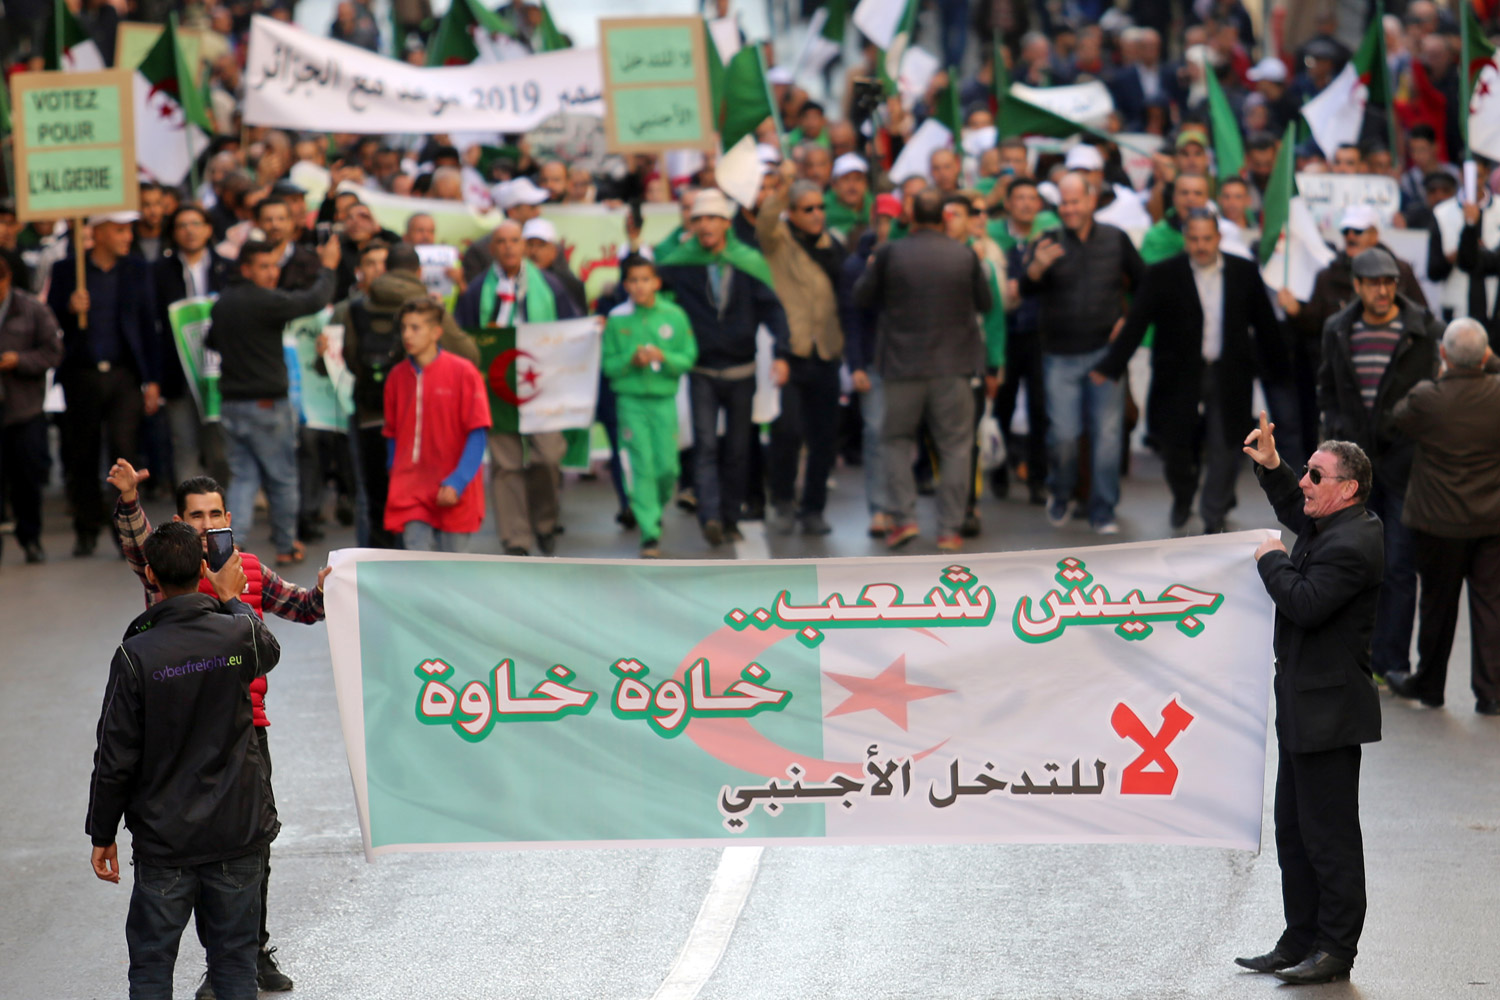 الصمت لا يمنع فرنسا من مراقبة احتجاجات الشارع الجزائري عن كثب